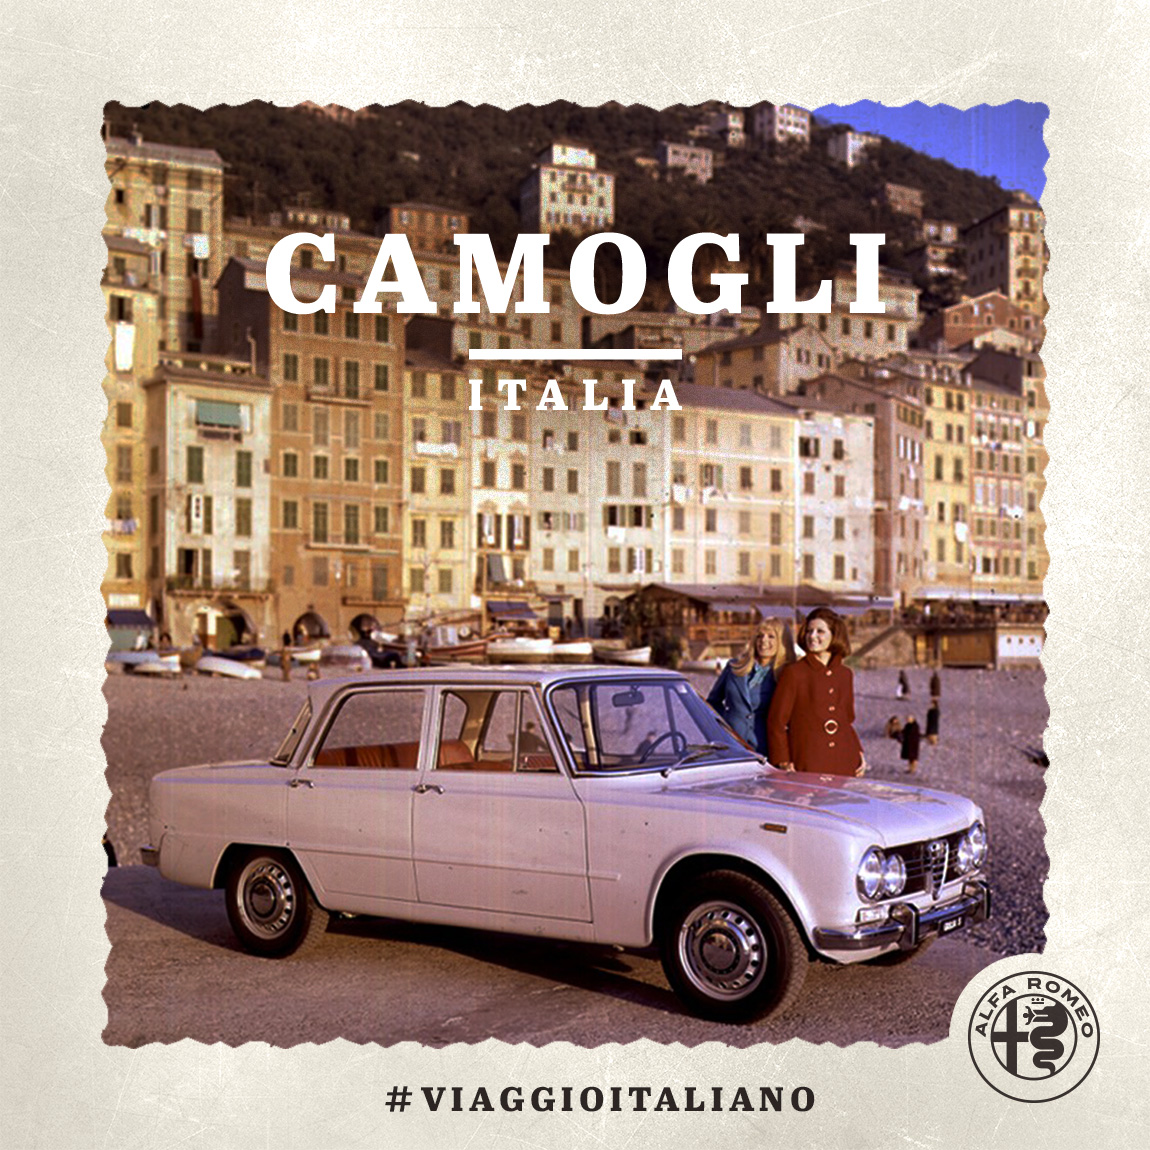 Image of an Alfa Romeo car in Camogli